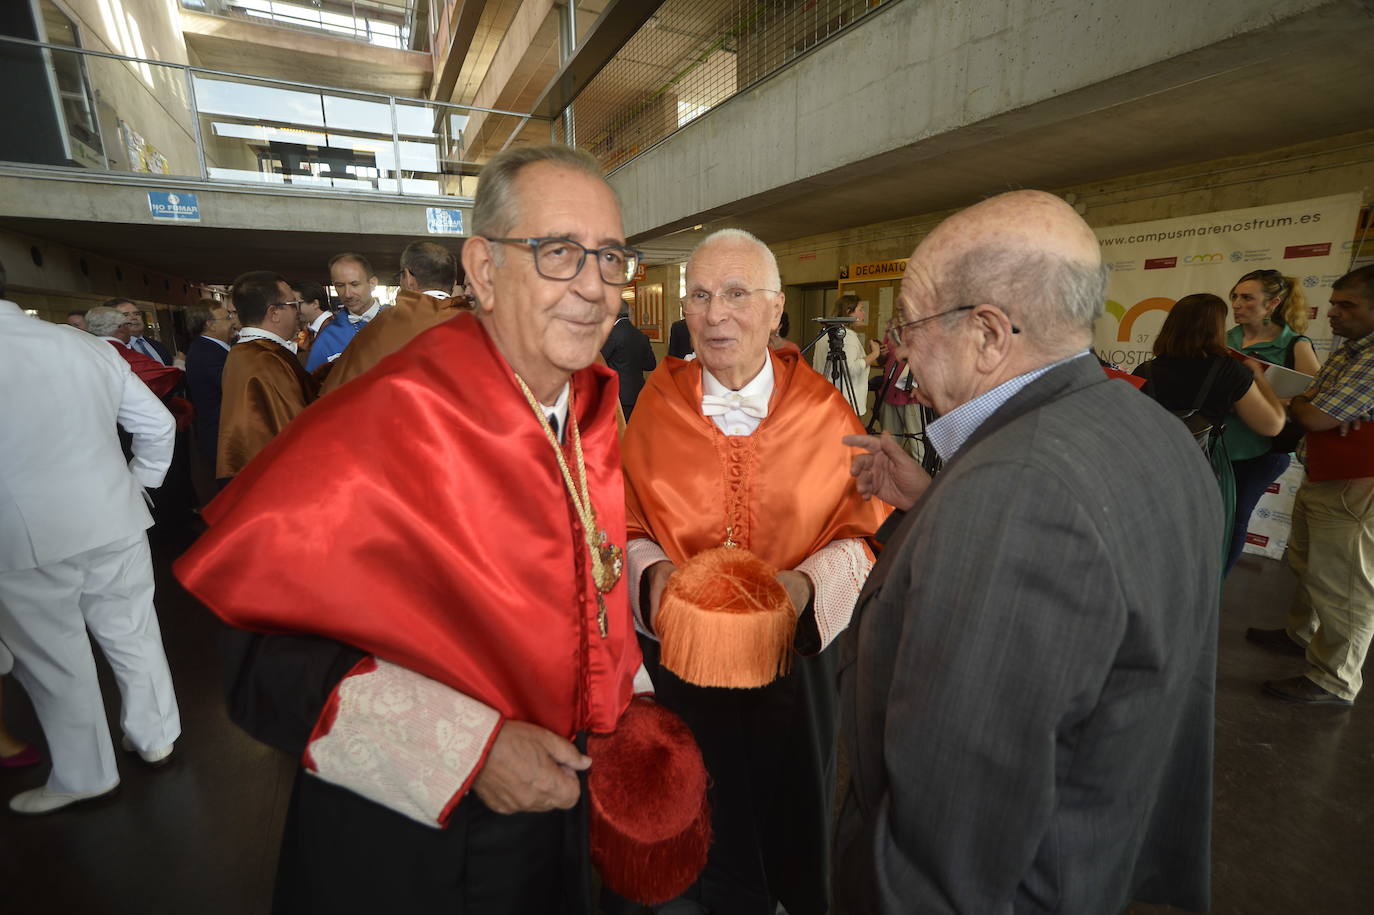 El catedrático de Óptica Pablo Artal, quien pronunció la lección magistral en acto de apertura de las universidades públicas, denuncia el envejecimiento de las plantillas investigadoras